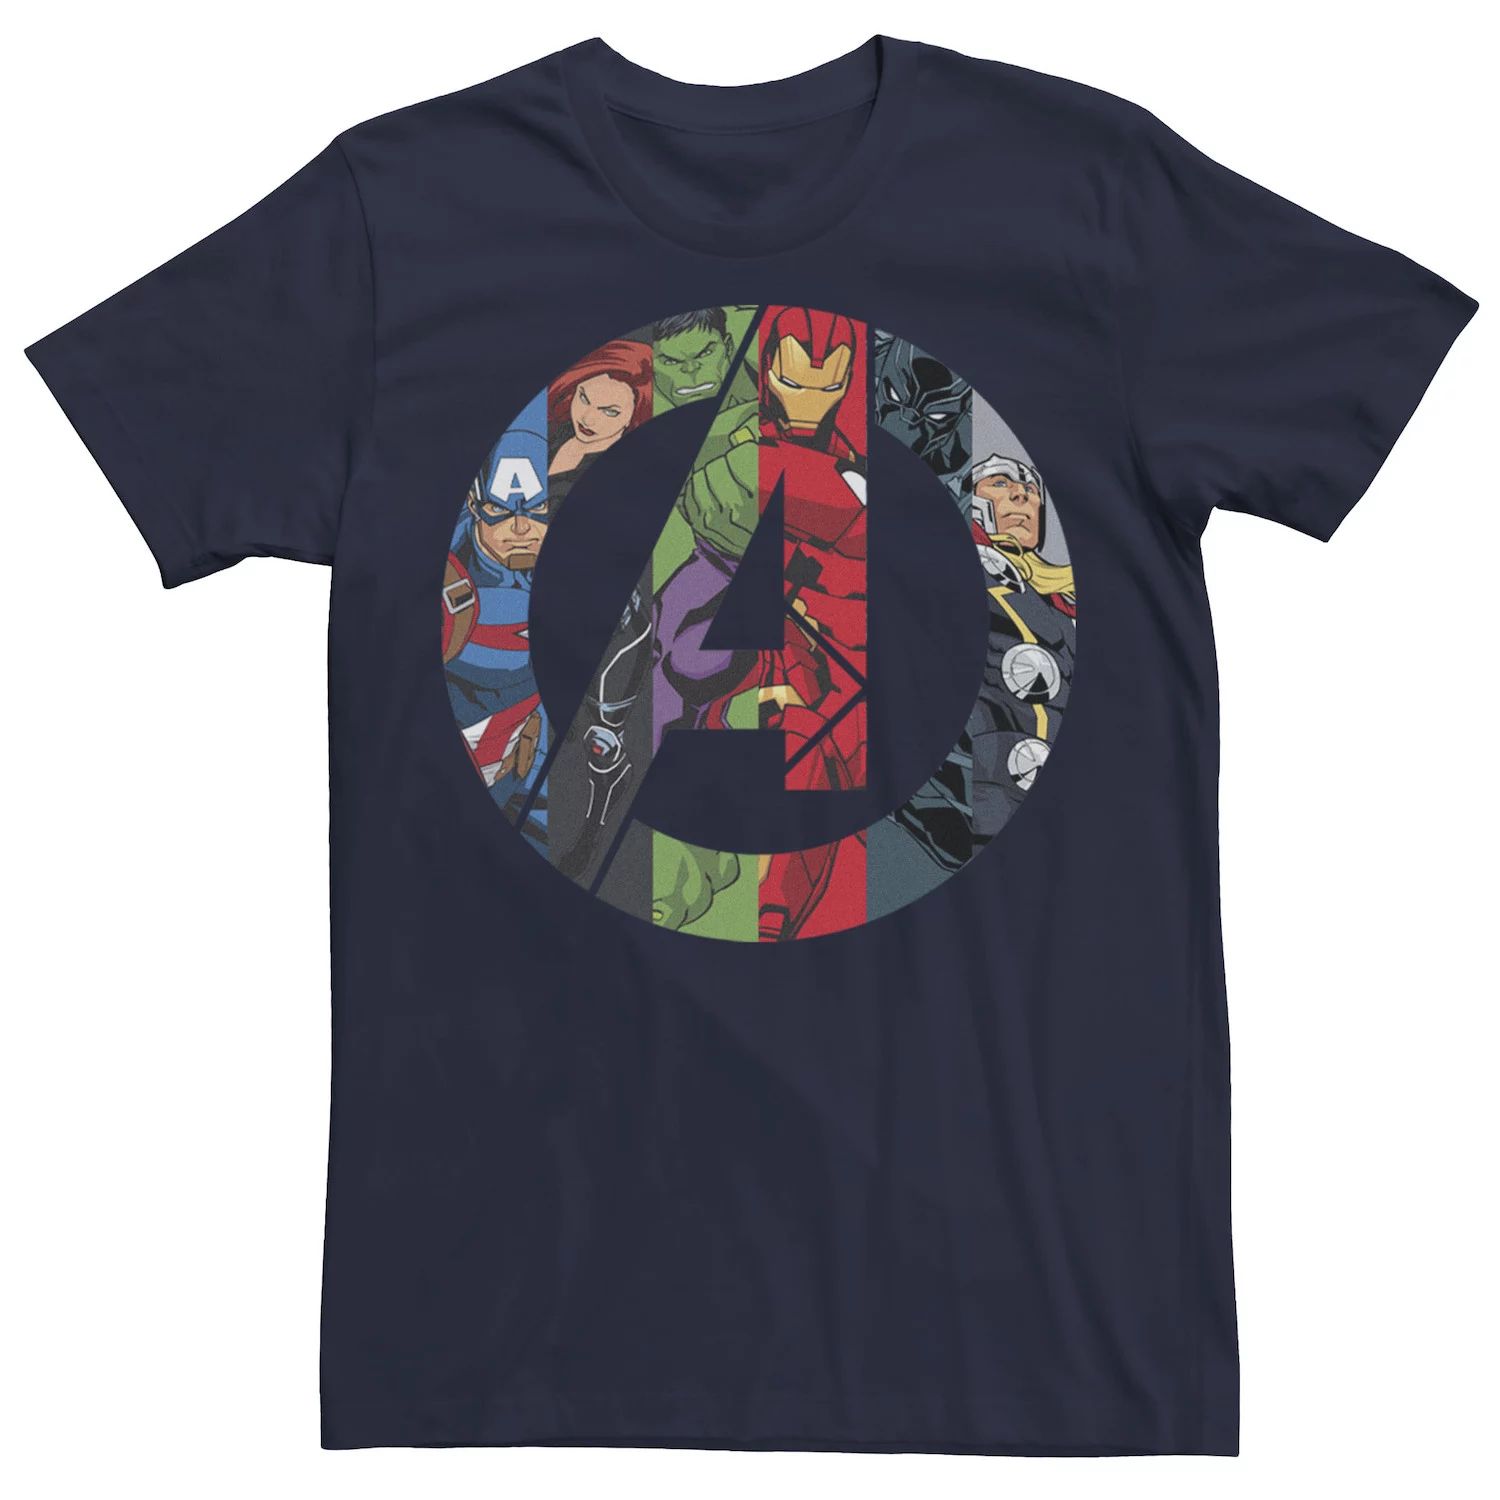 Мужская футболка с логотипом Avengers Group Shot в стиле комиксов Marvel